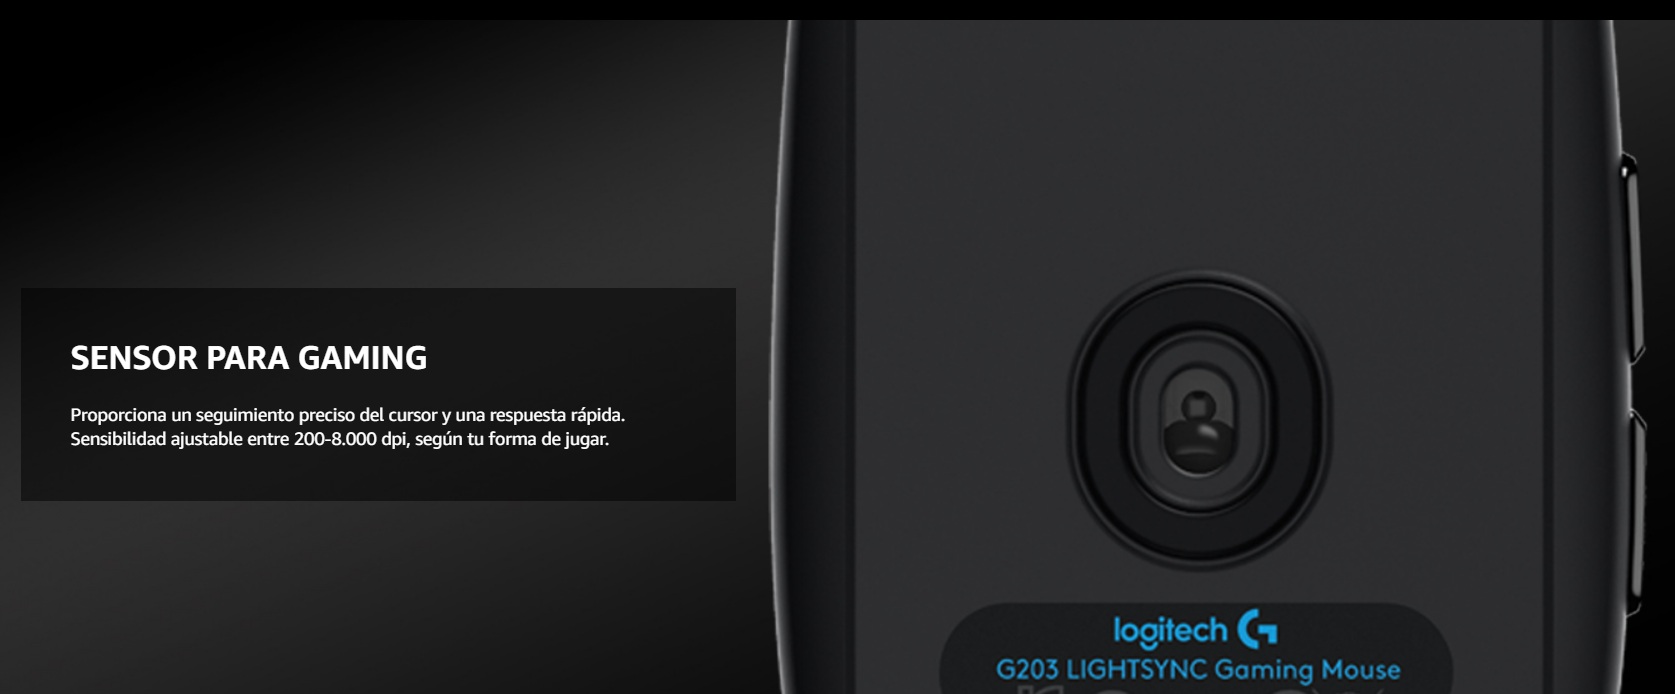 Logitech G203 - Sensor óptico